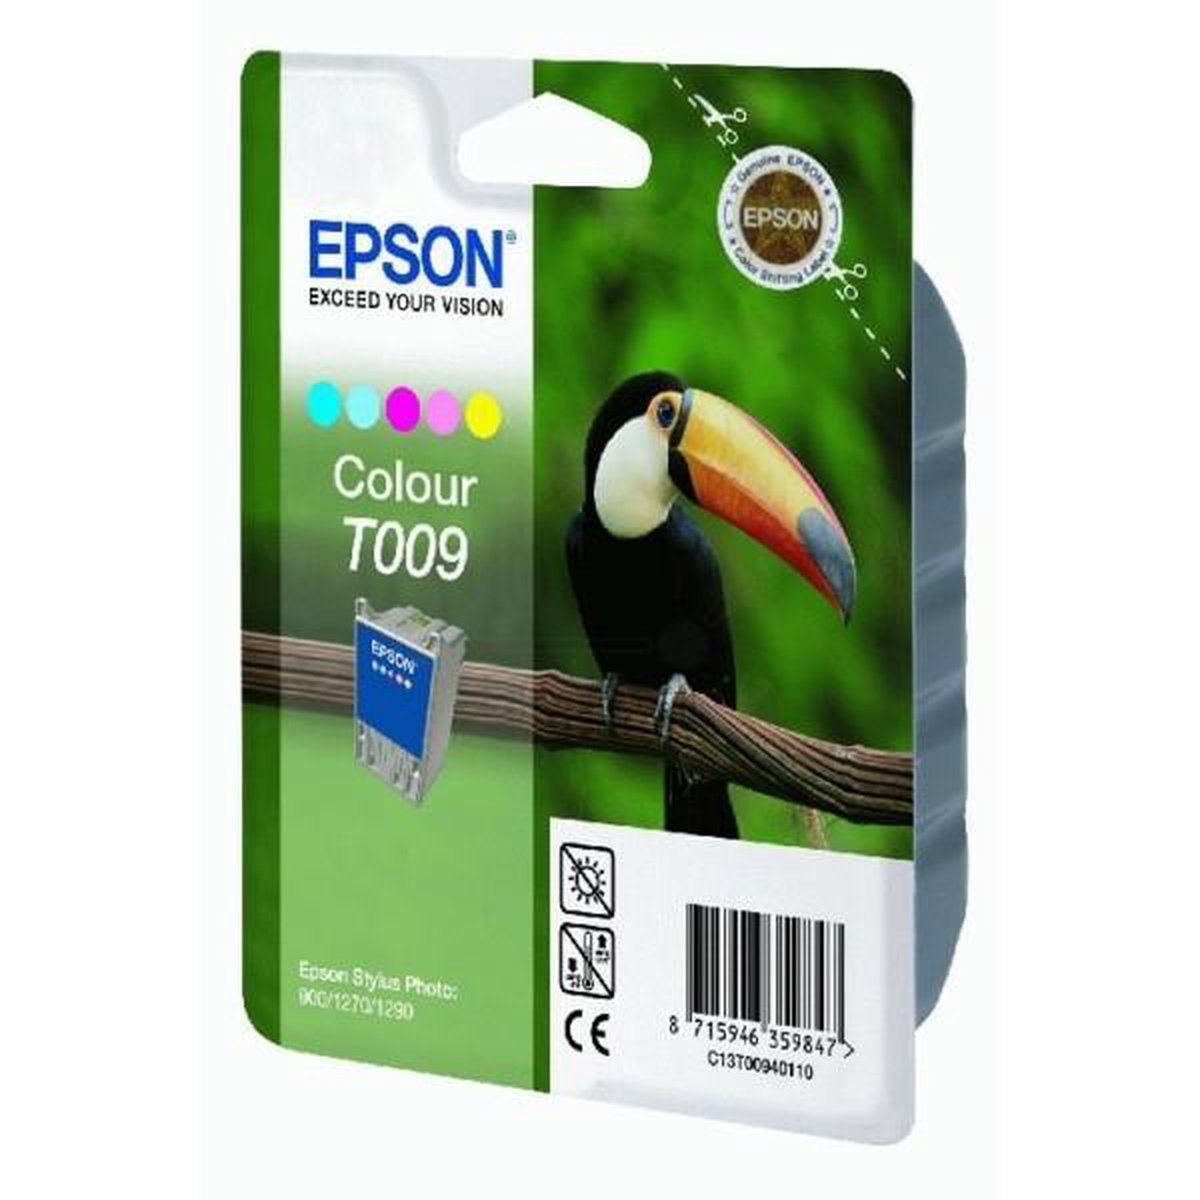 Epson T009 - Inktcartridge / Kleur